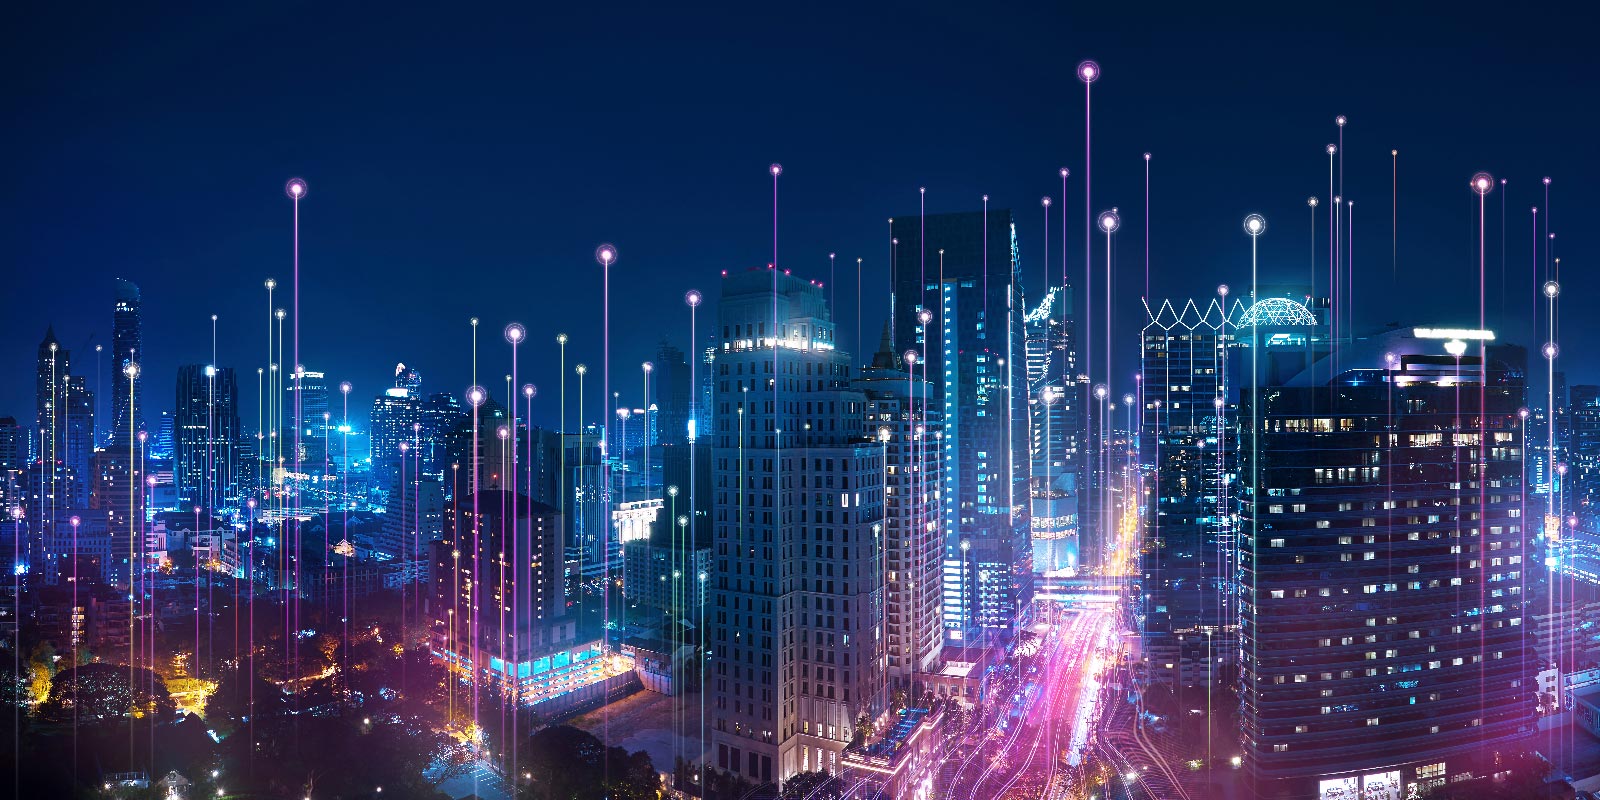 通信網の接続を表す青色と紫色の光線が重ねられている夜の都市景観の空撮写真